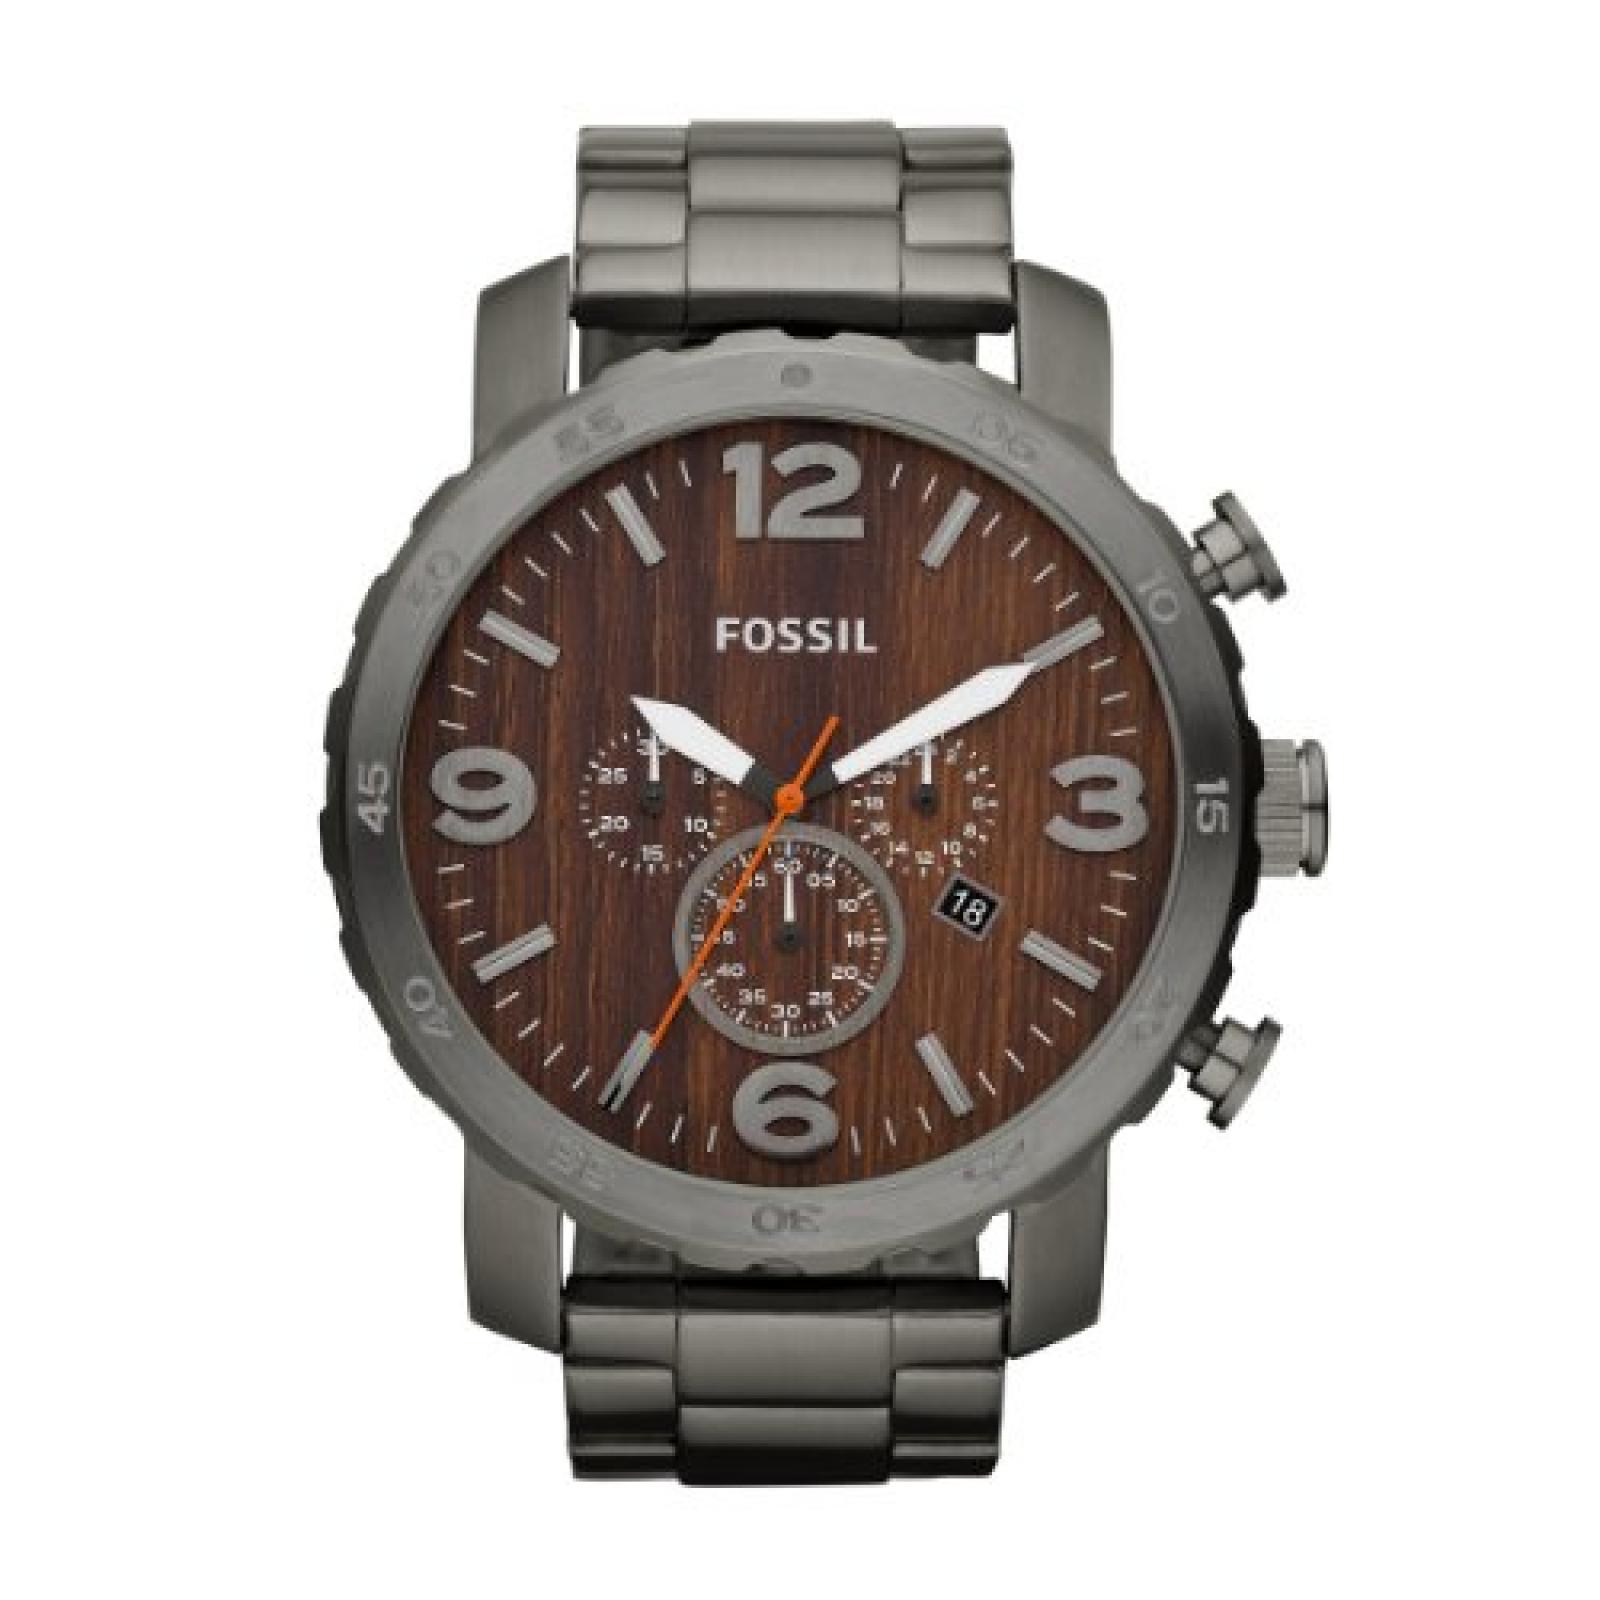 Fossil Herren-Armbanduhr XL Trend Analog Edelstahl JR1355 